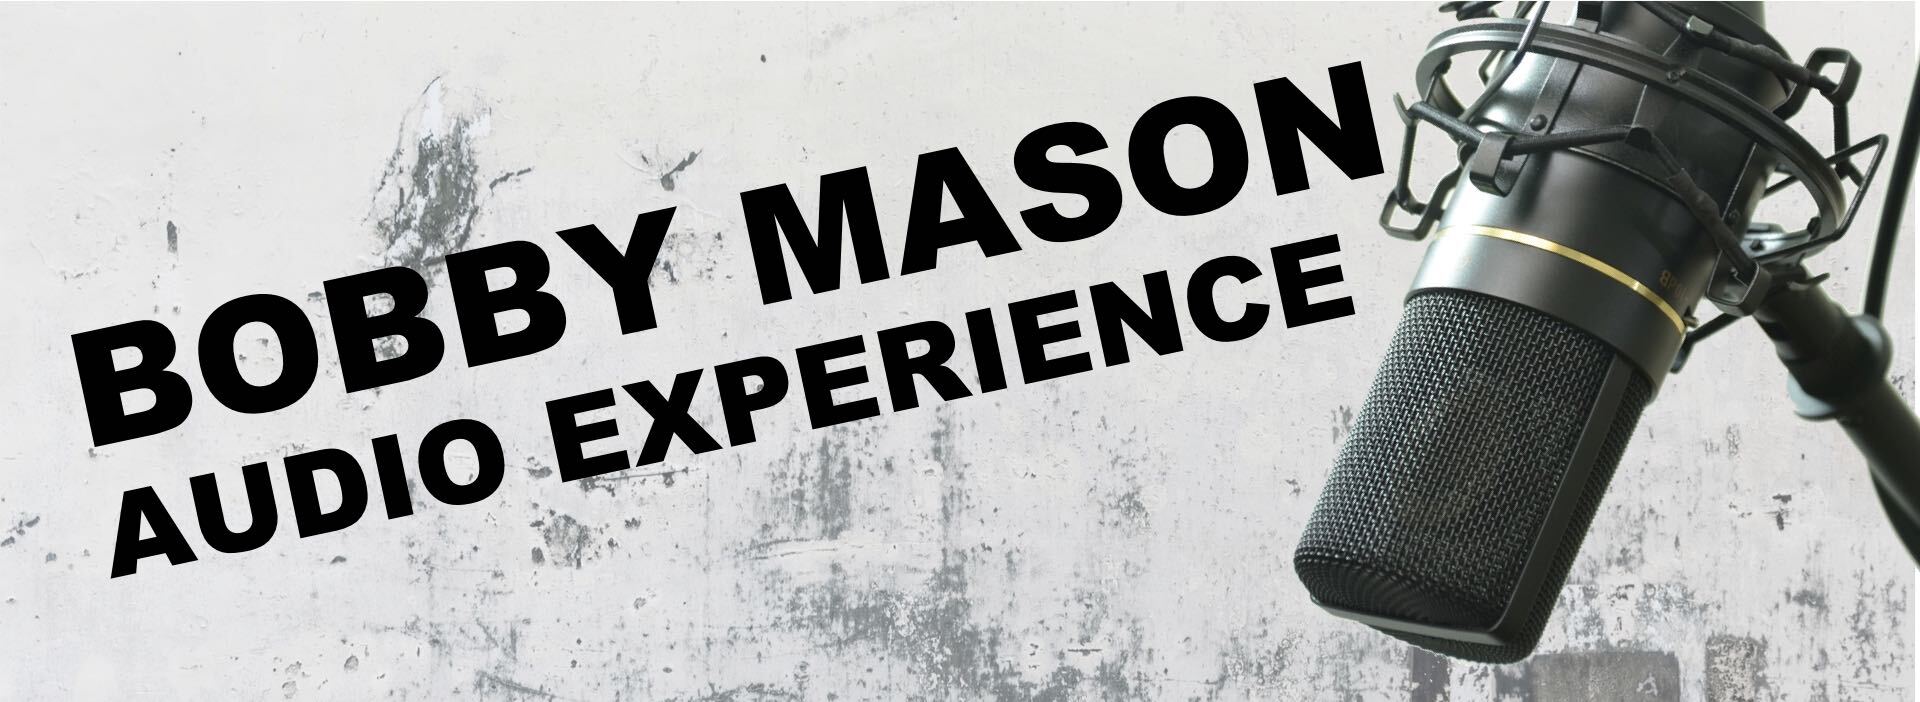 THE BOBBY MASON AUDIO EXPERIENCE